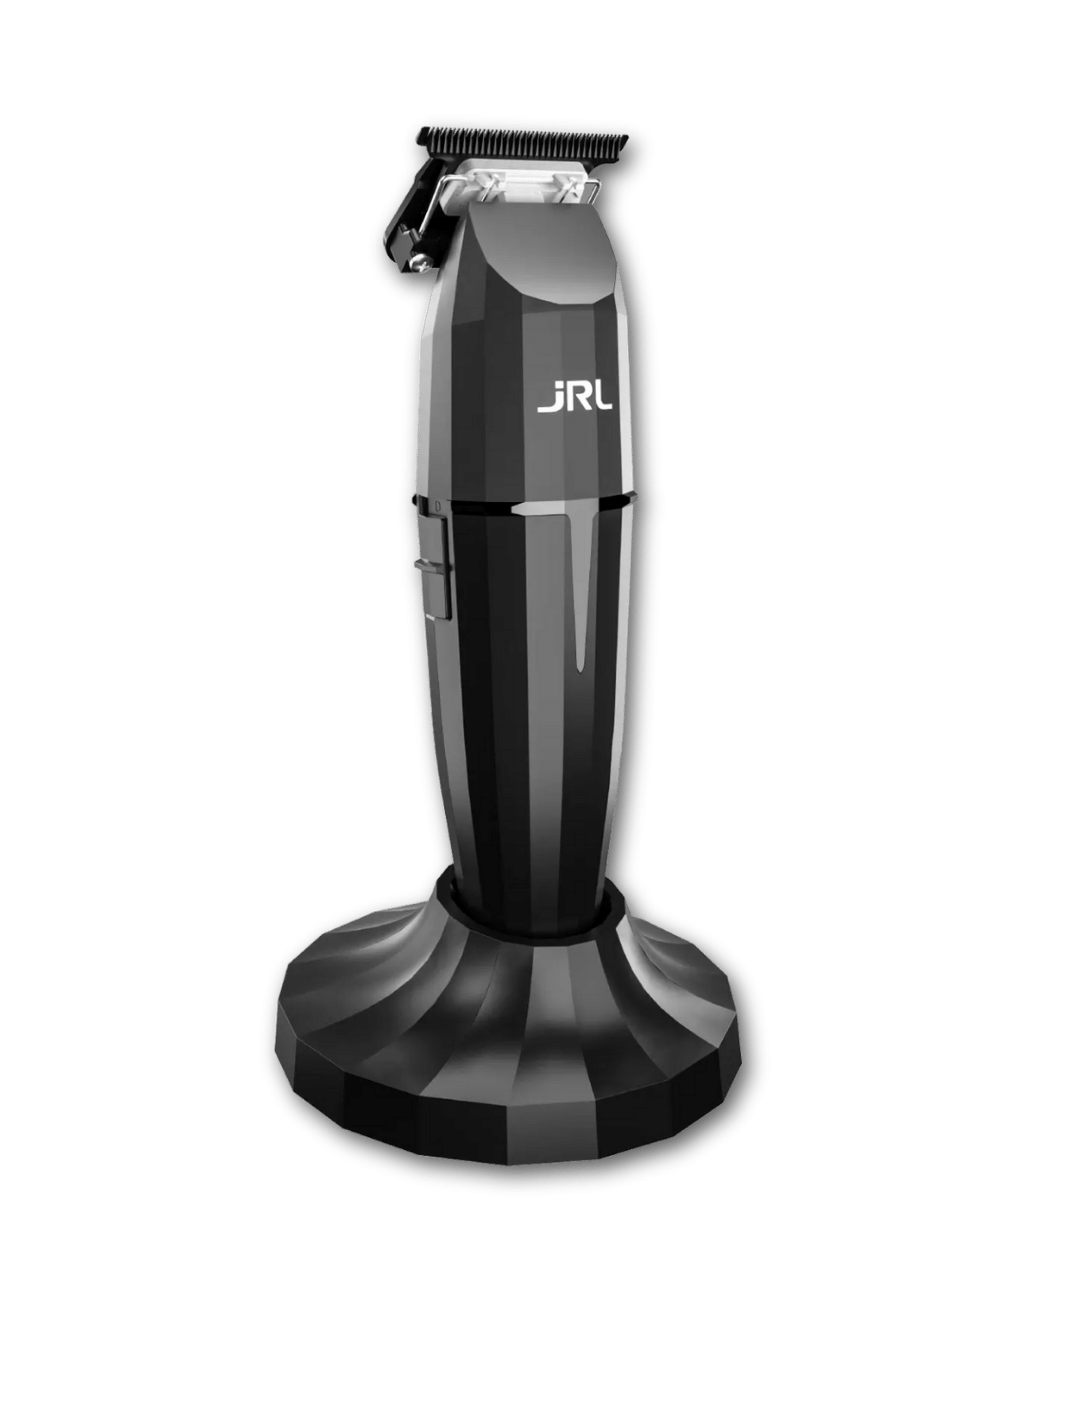 JRL Onyx FF 2020T-B Professional Kabelloser Trimmer, erhältlich bei Phullcutz. Ideal für präzises Konturieren, Design-Schnitte und Ausrasieren. Langlebiger Akku und leistungsstarker Motor.